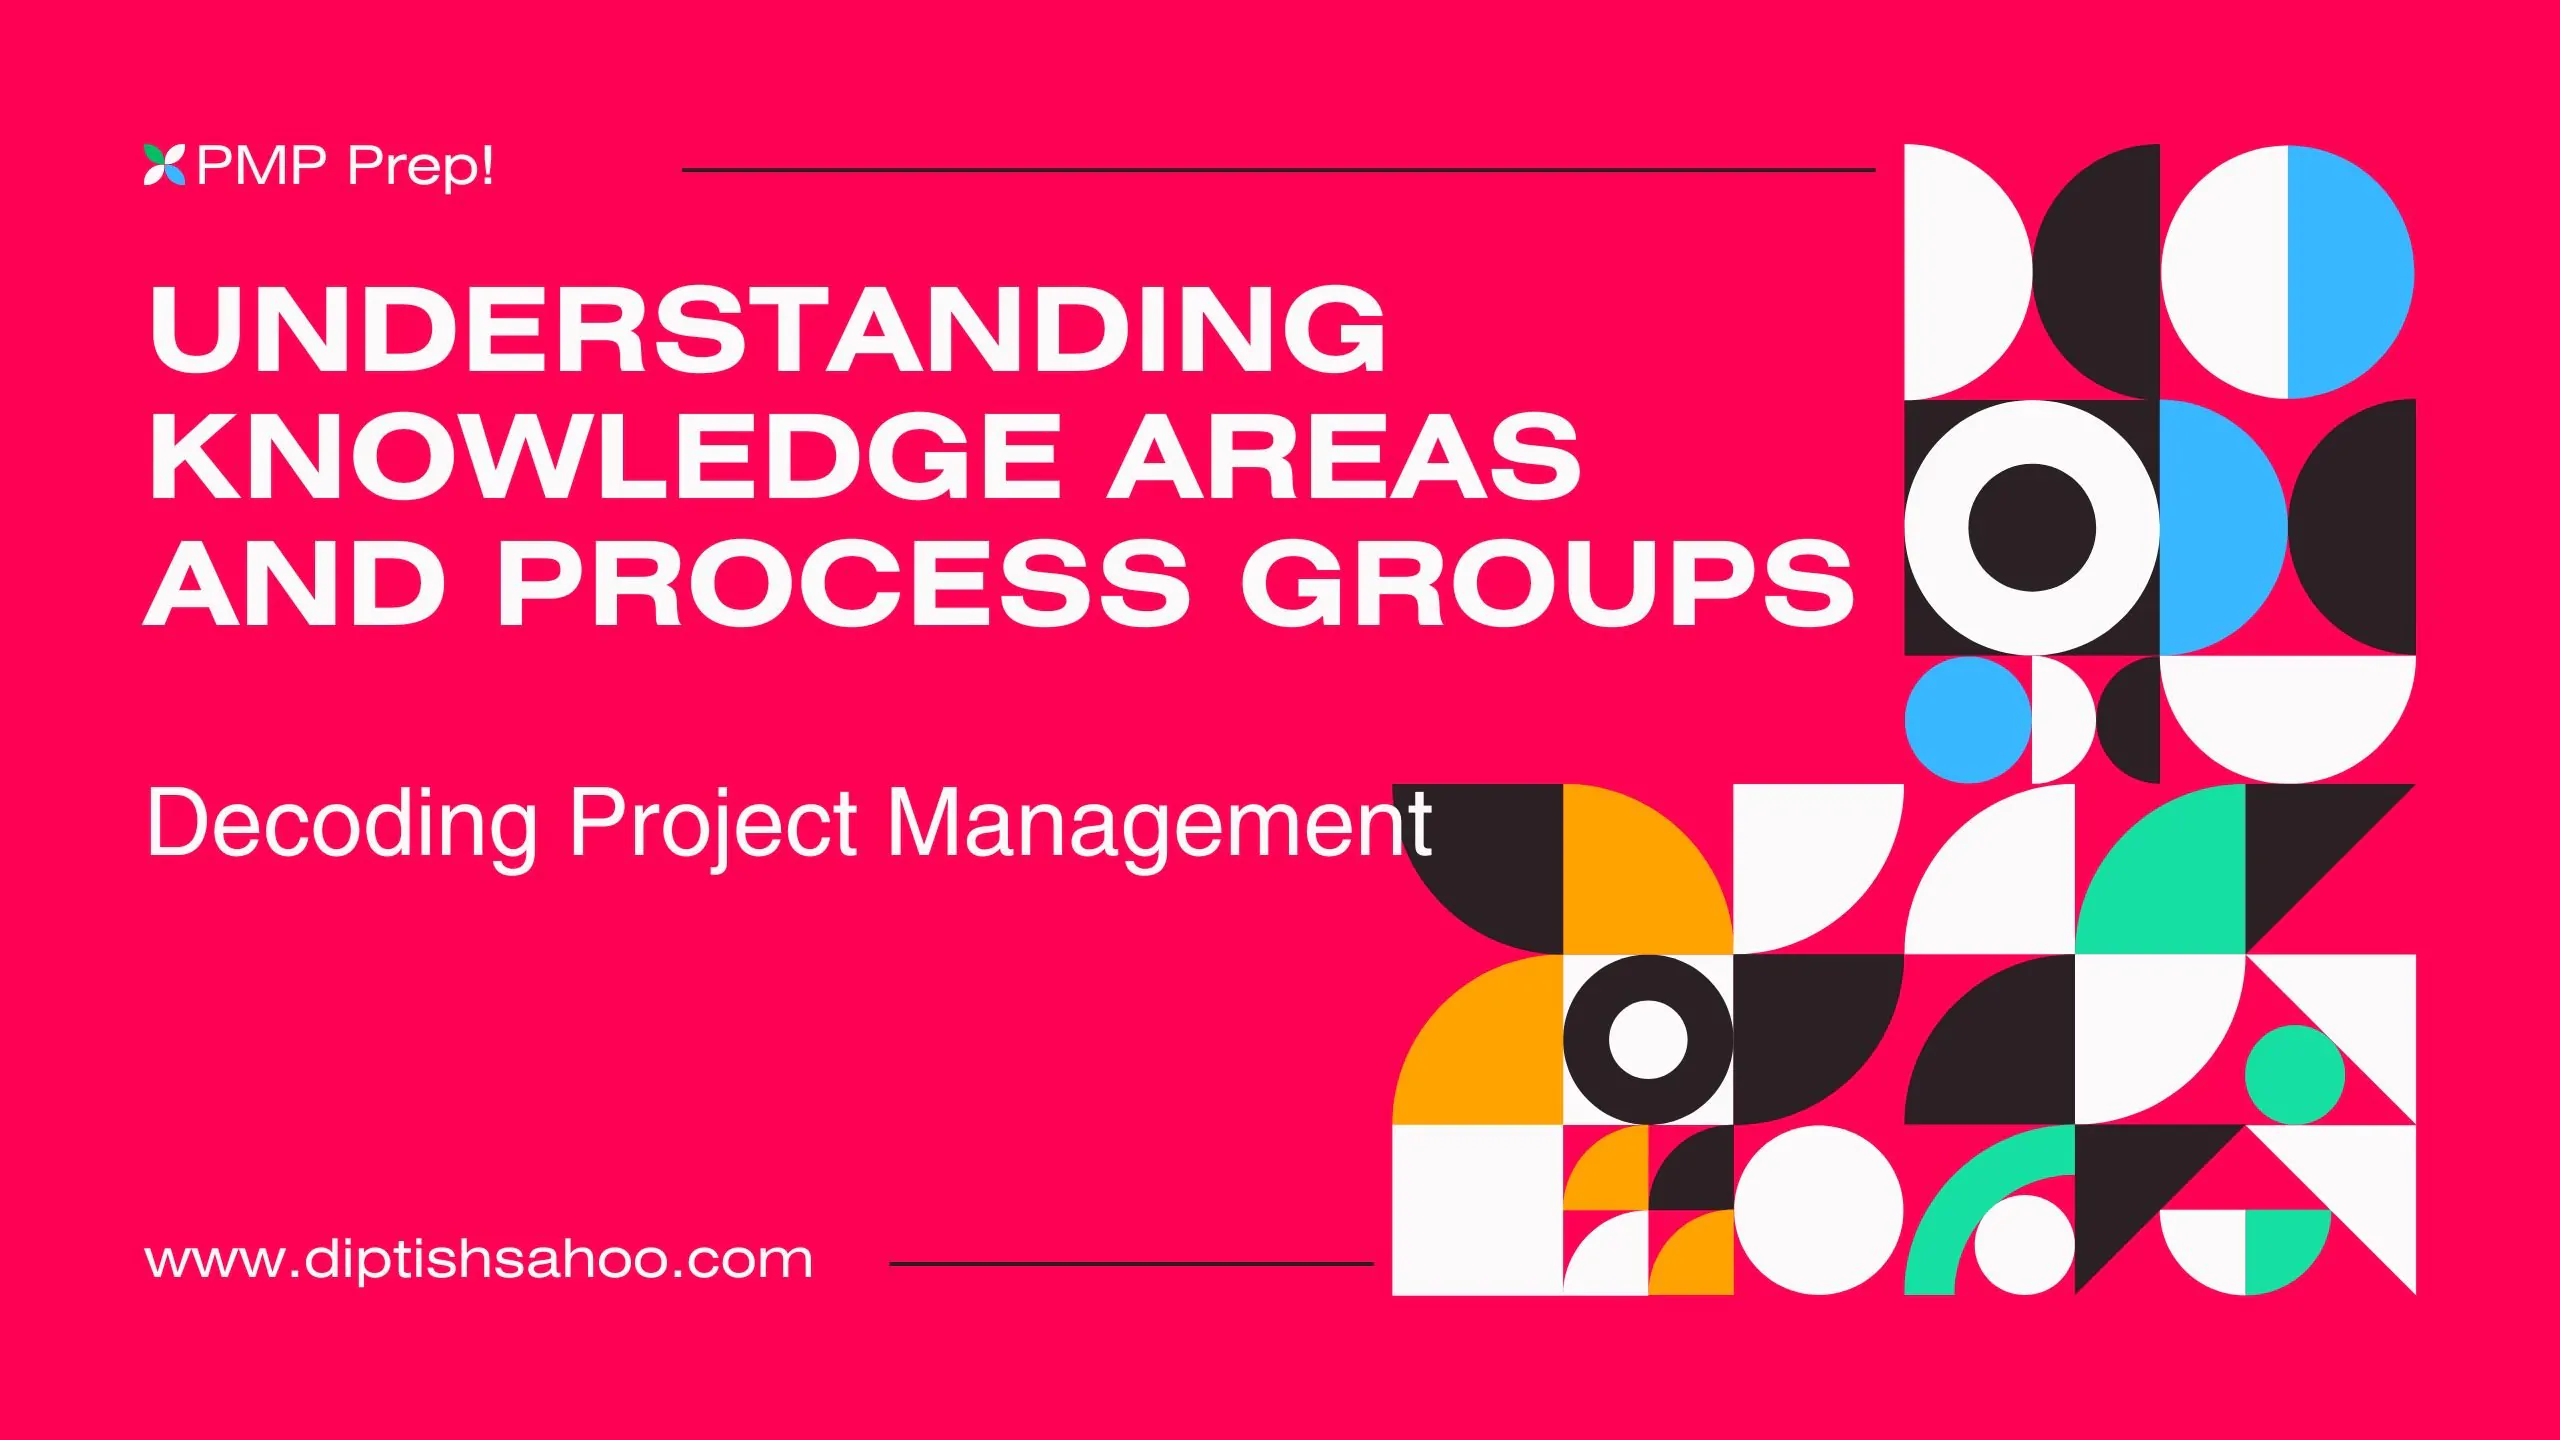 Decoding Project Management